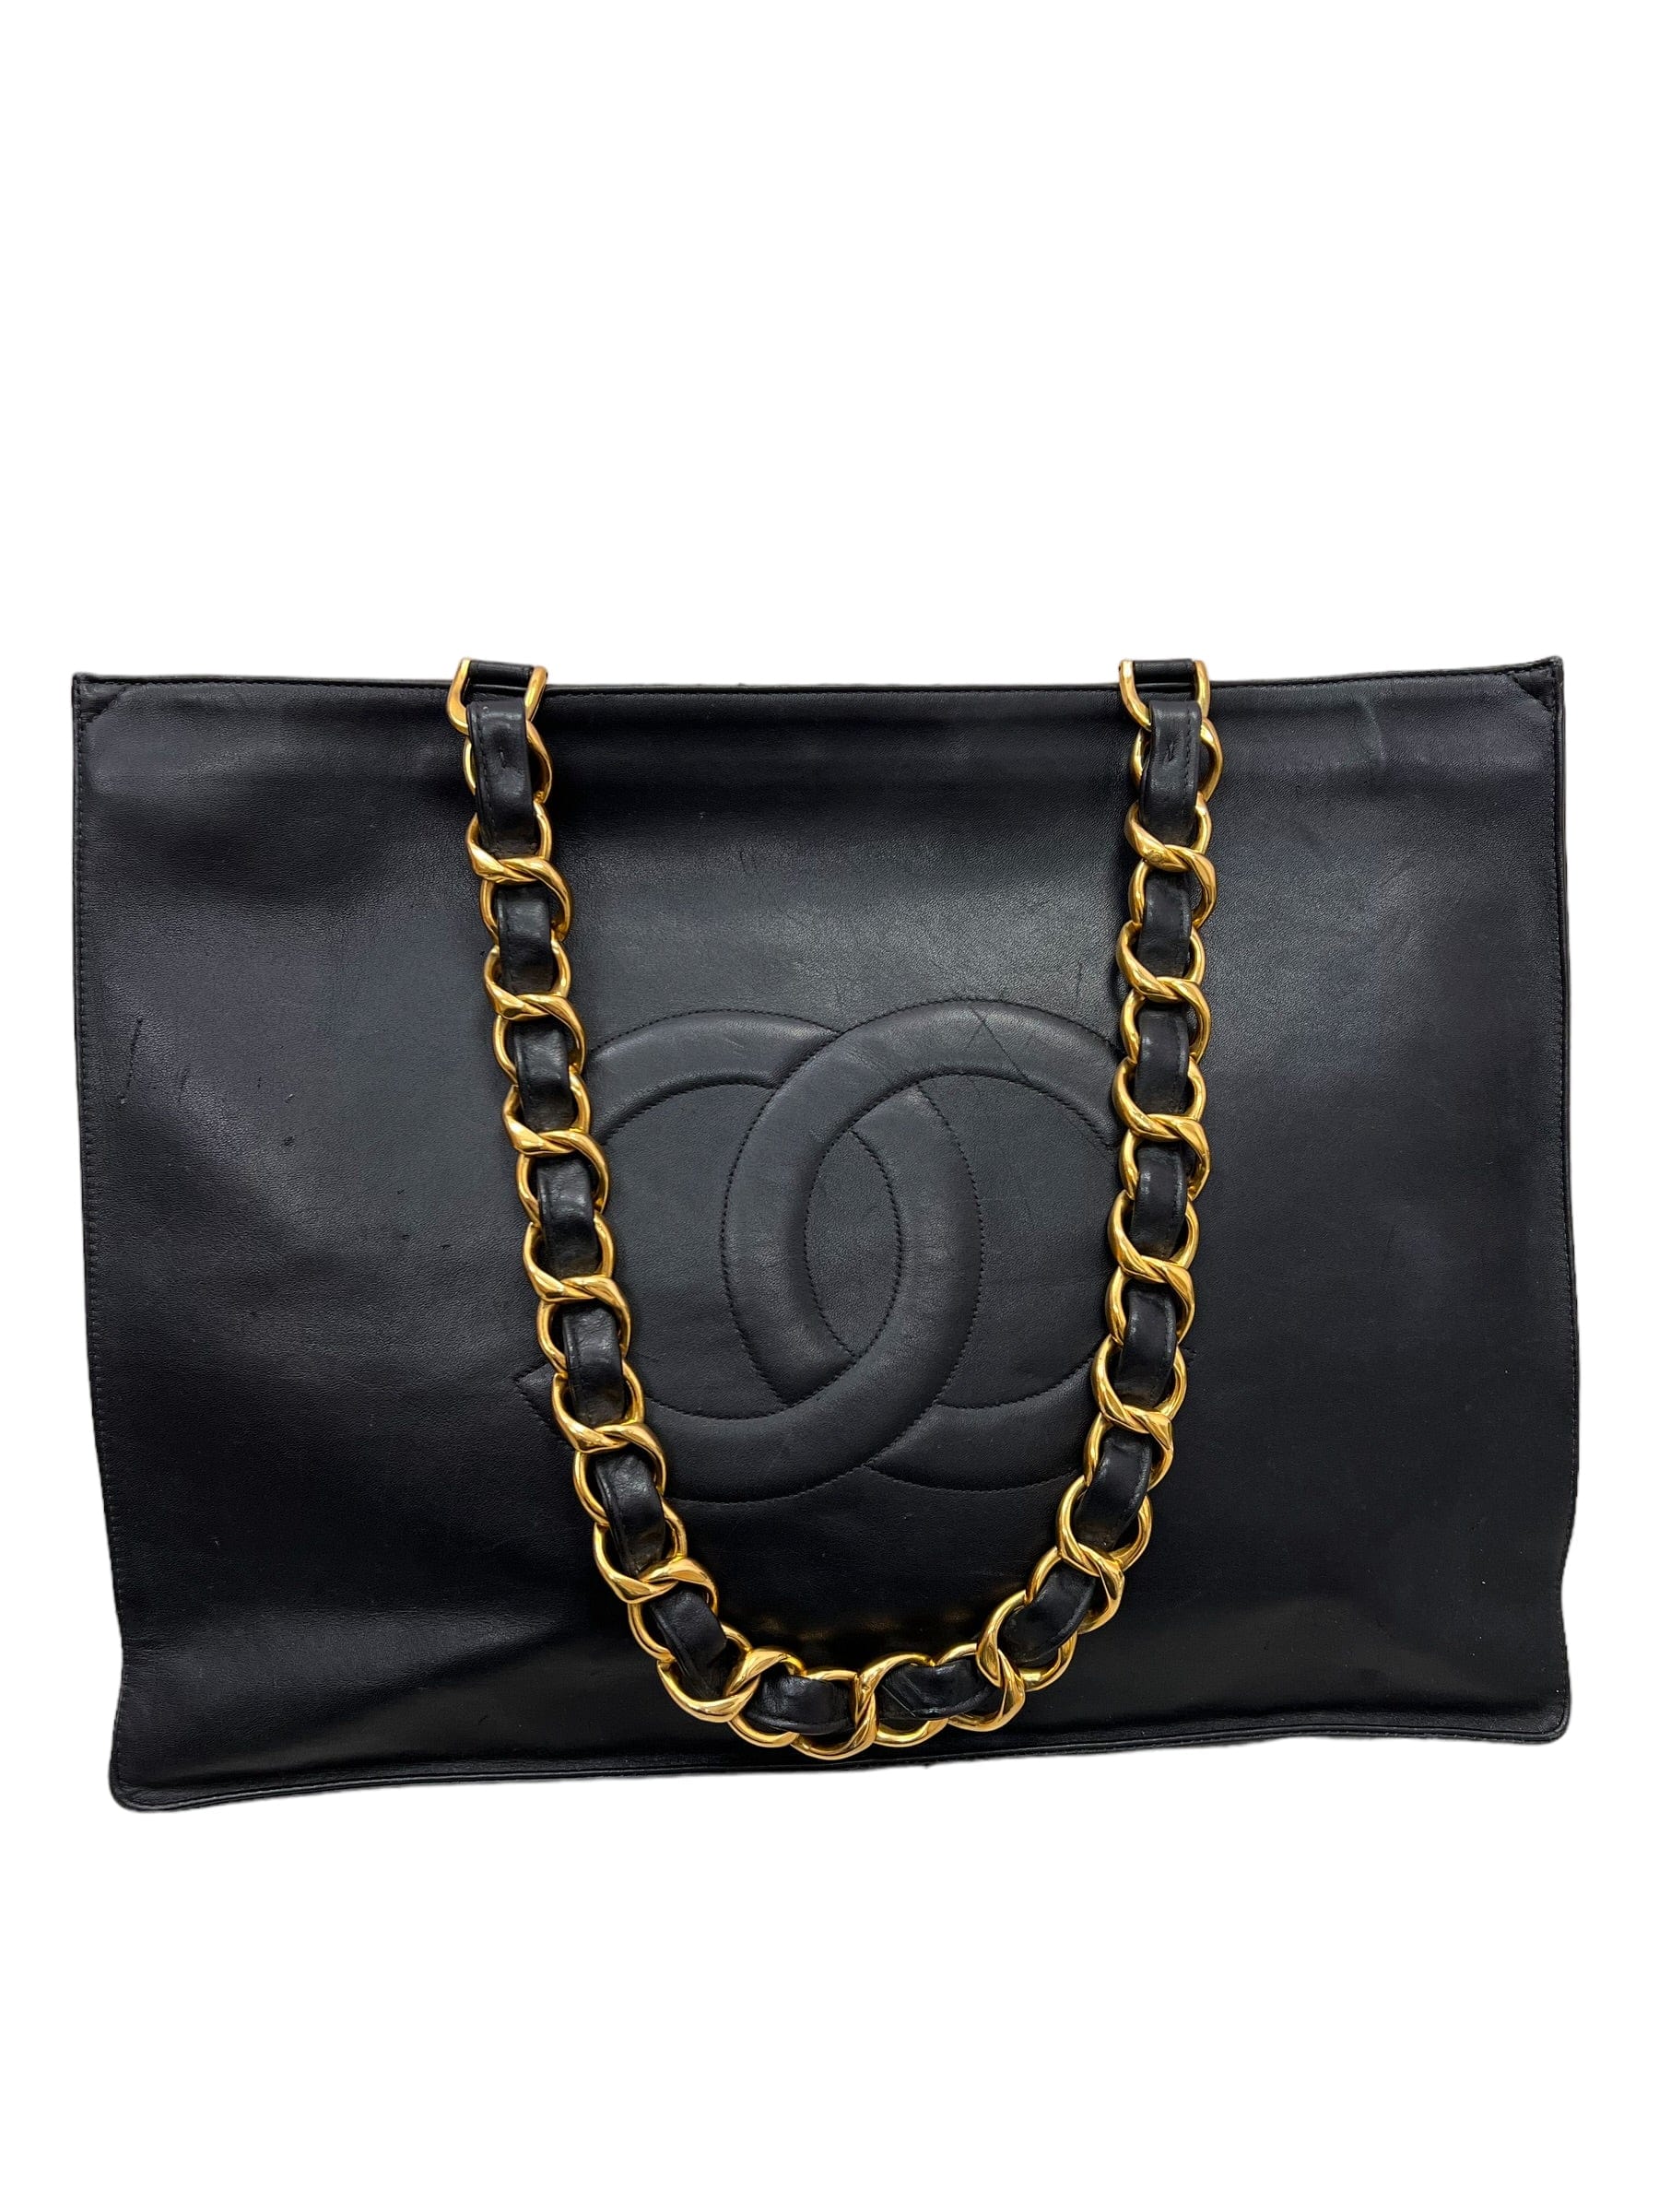 Chanel Vintage CC Chain Tote - Black Totes, Handbags - CHA752765